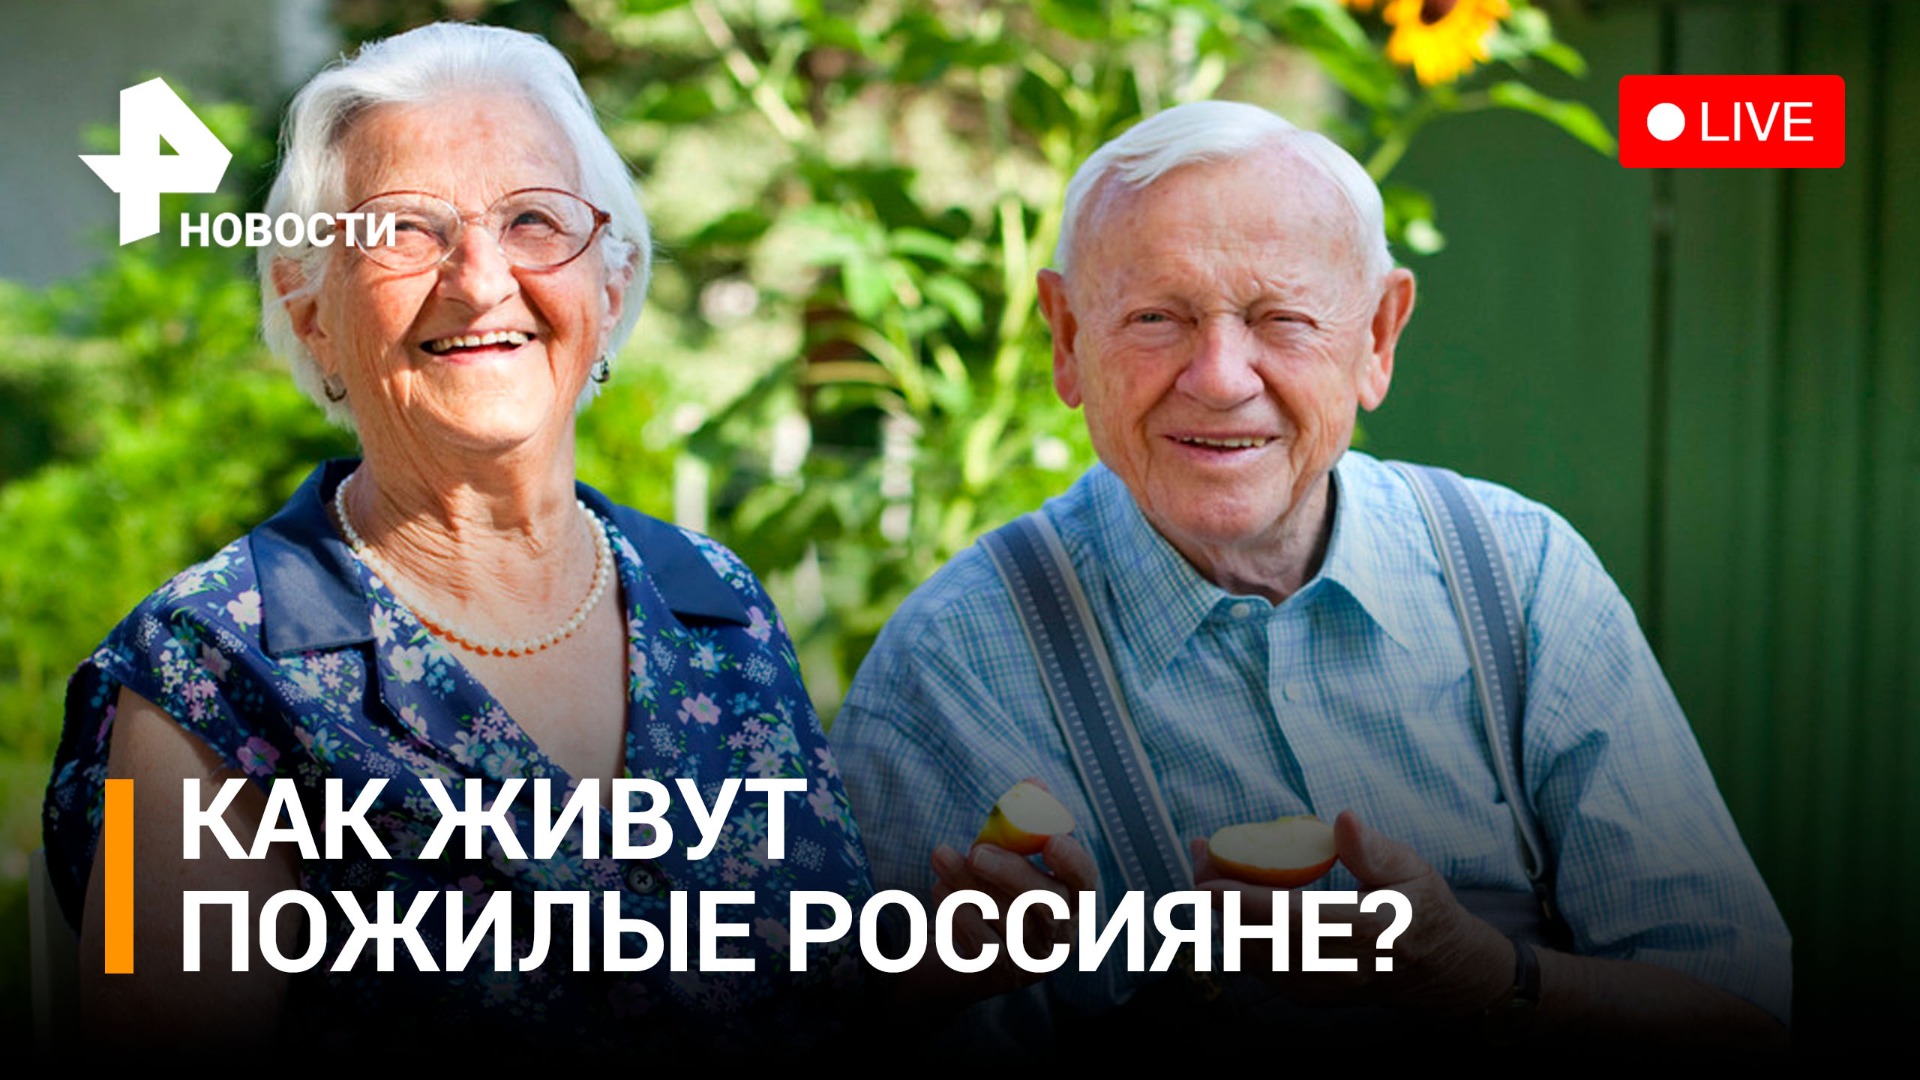 Образ жизни россиян «серебряного возраста». Пресс-конференция / РЕН Новости